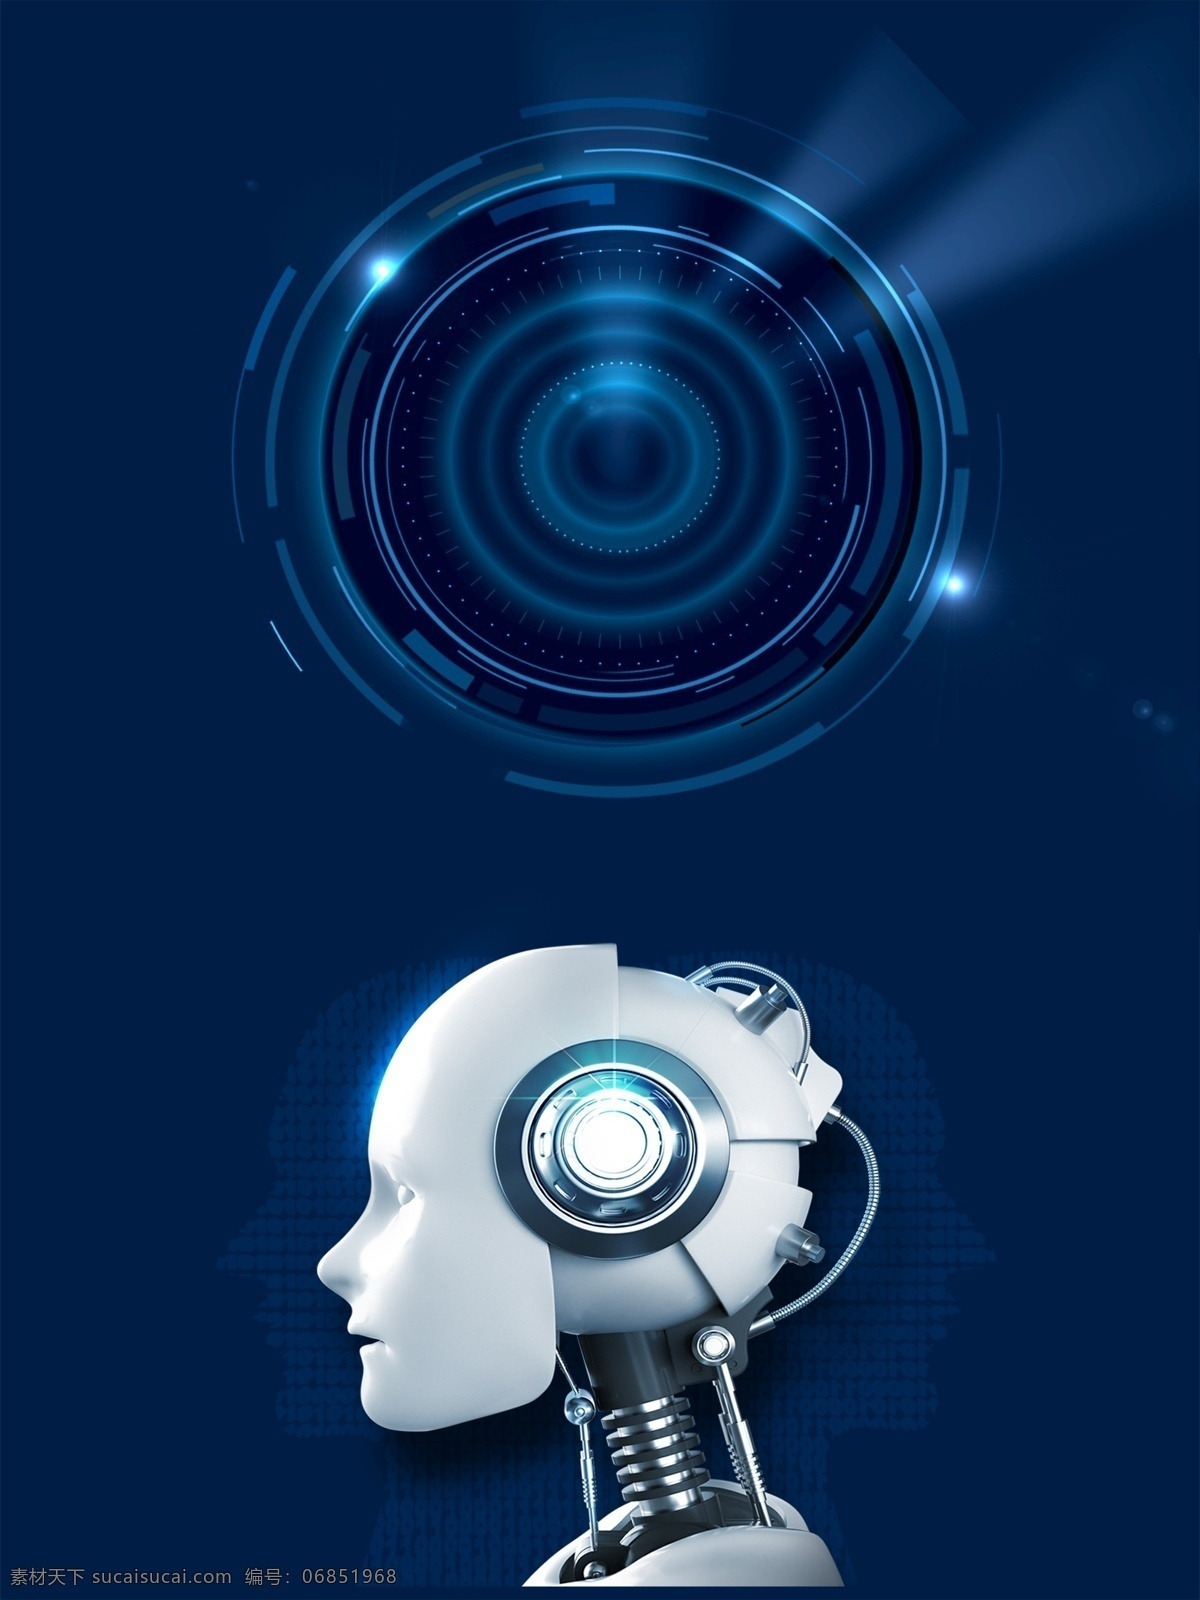 现代科技 智能 人脑 背景 蓝色背景 背景素材 背景图 会议背景 科技展板 智能ai 智能时代 科技背景 科技风 商务科技 科技之光 高科技 动感科技